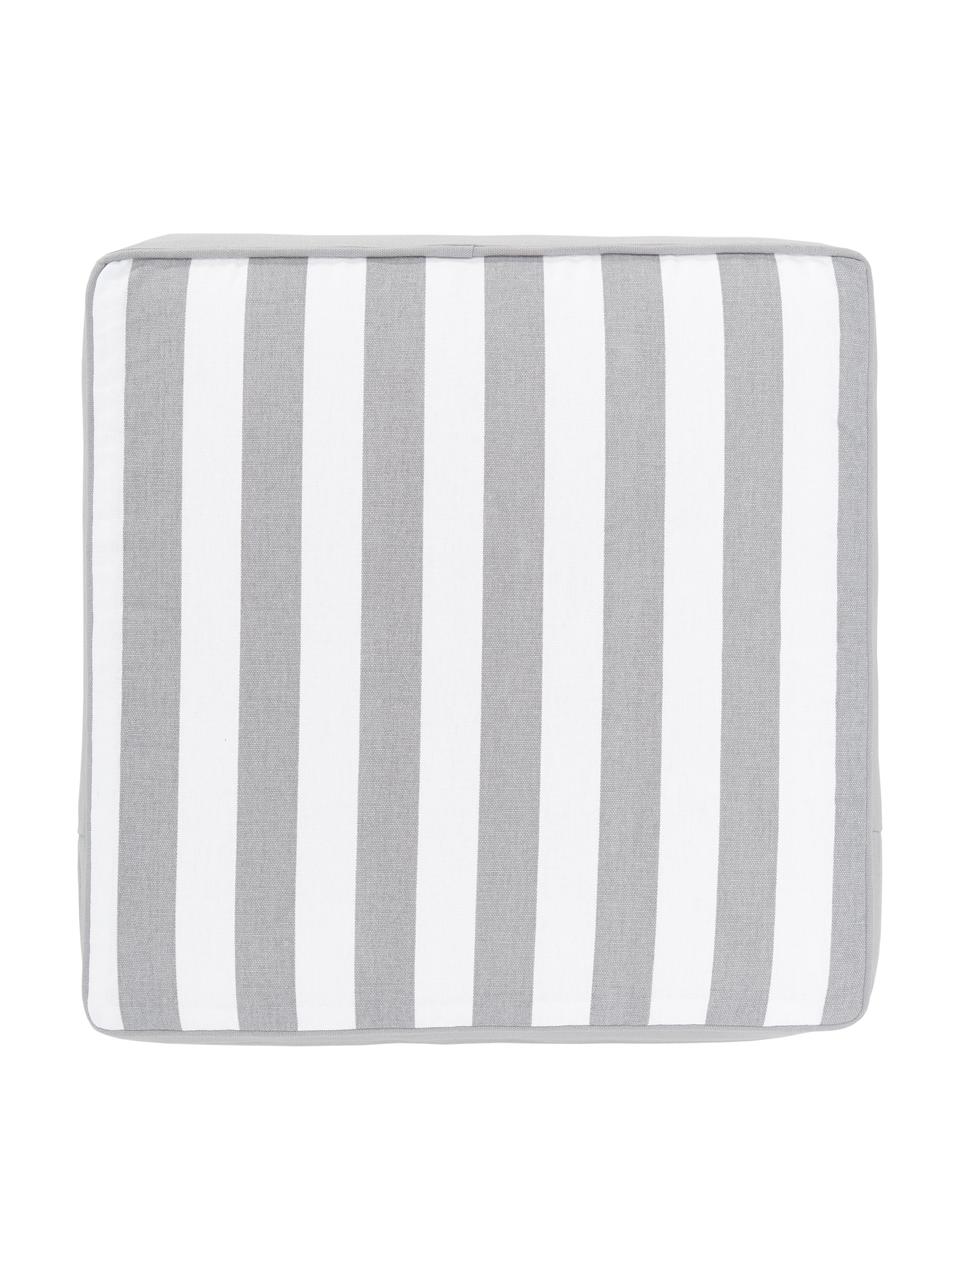 Cuscino sedia alto a righe color grigio chiaro/bianco Timon, Rivestimento: 100% cotone, Grigio, bianco, Larg. 40 x Lung. 40 cm